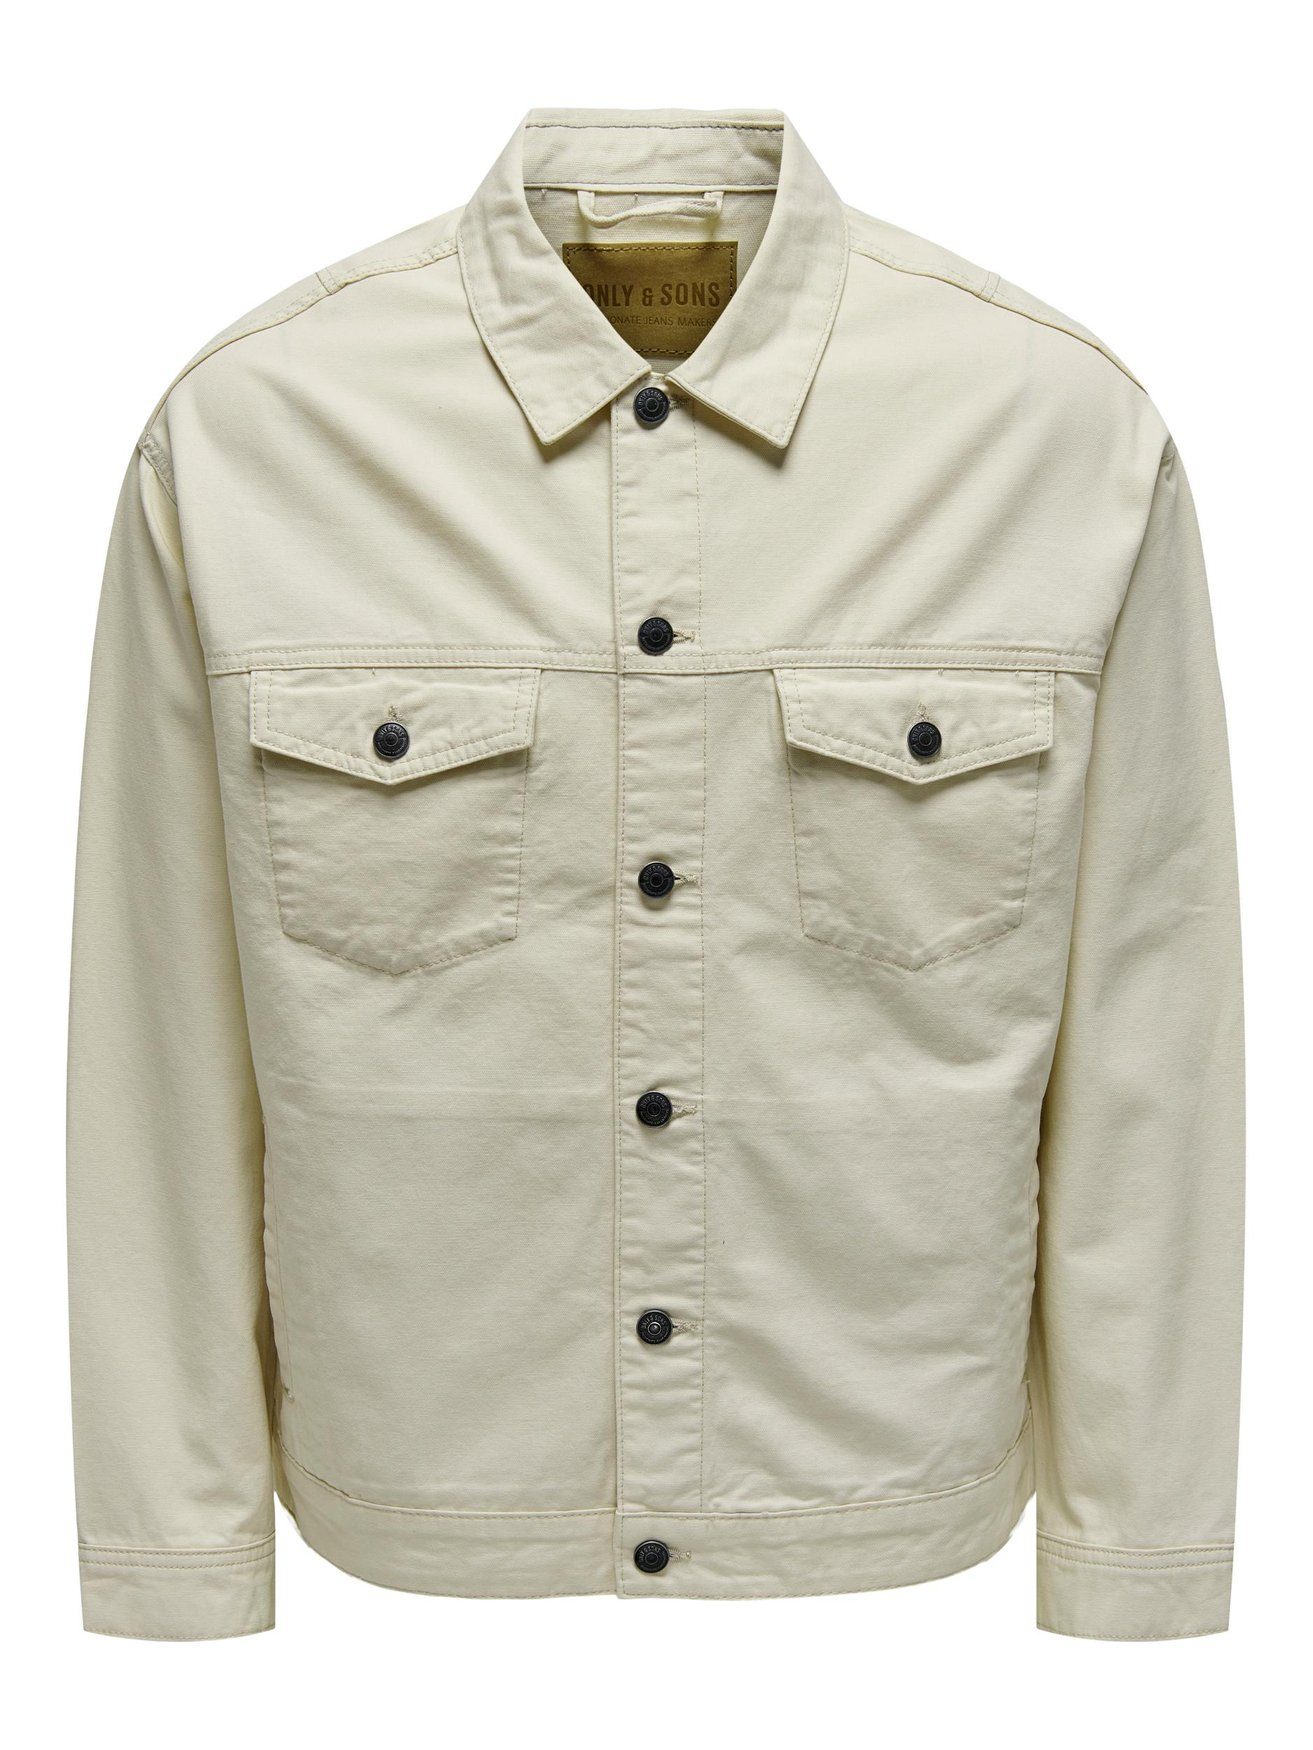 ONLY & SONS Langarmhemd Hemd Jacke Basic Übergangs Shaket mit Taschen ONSEND 6490 in Beige